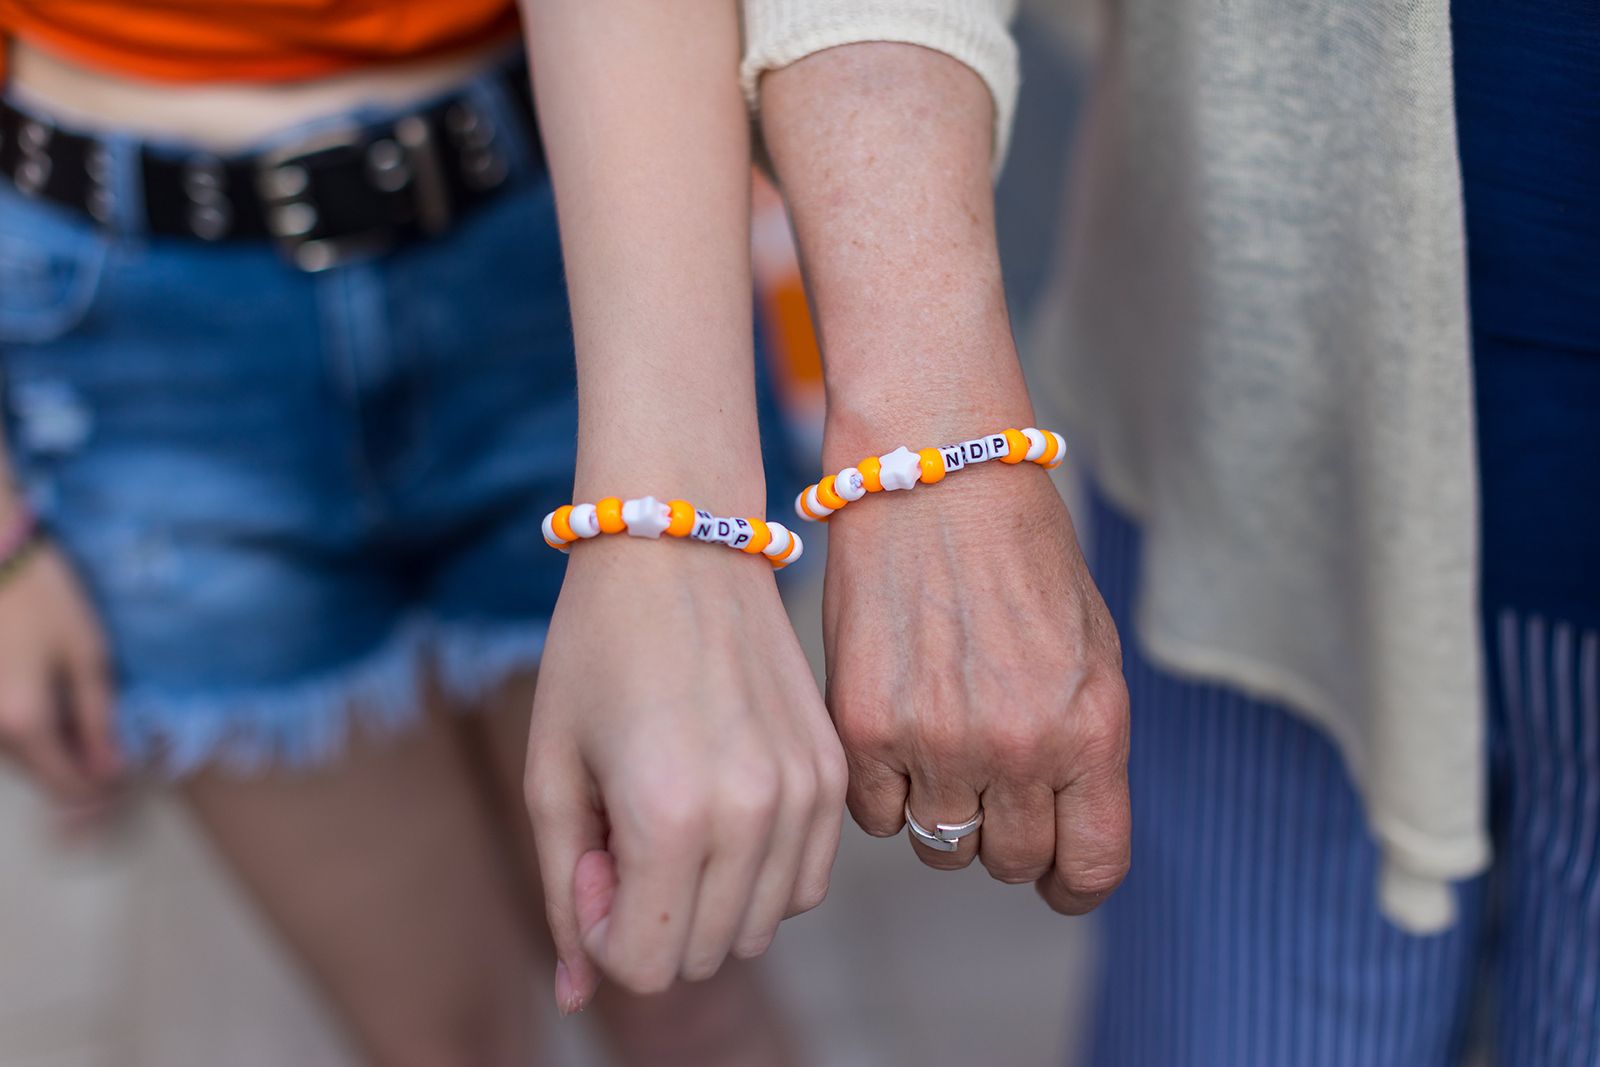 Two people wearing NDP bracelets